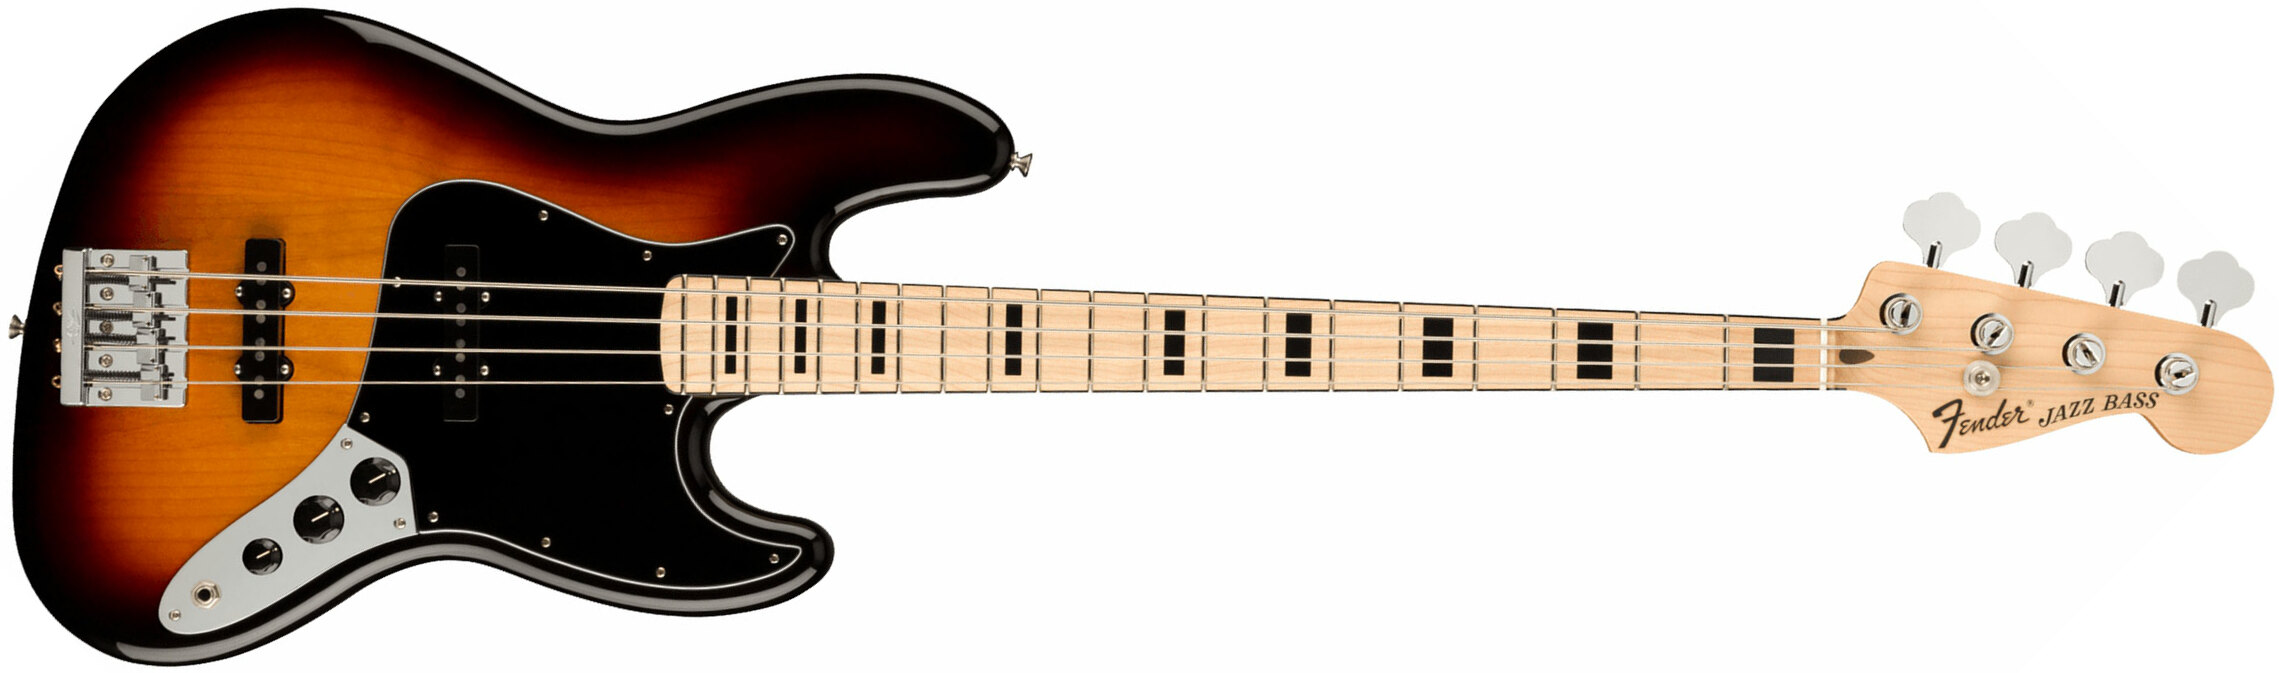 Fender Geddy Lee Jazz Bass Signature Mex Mn - 3-color Sunburst - Basse Électrique Solid Body - Main picture